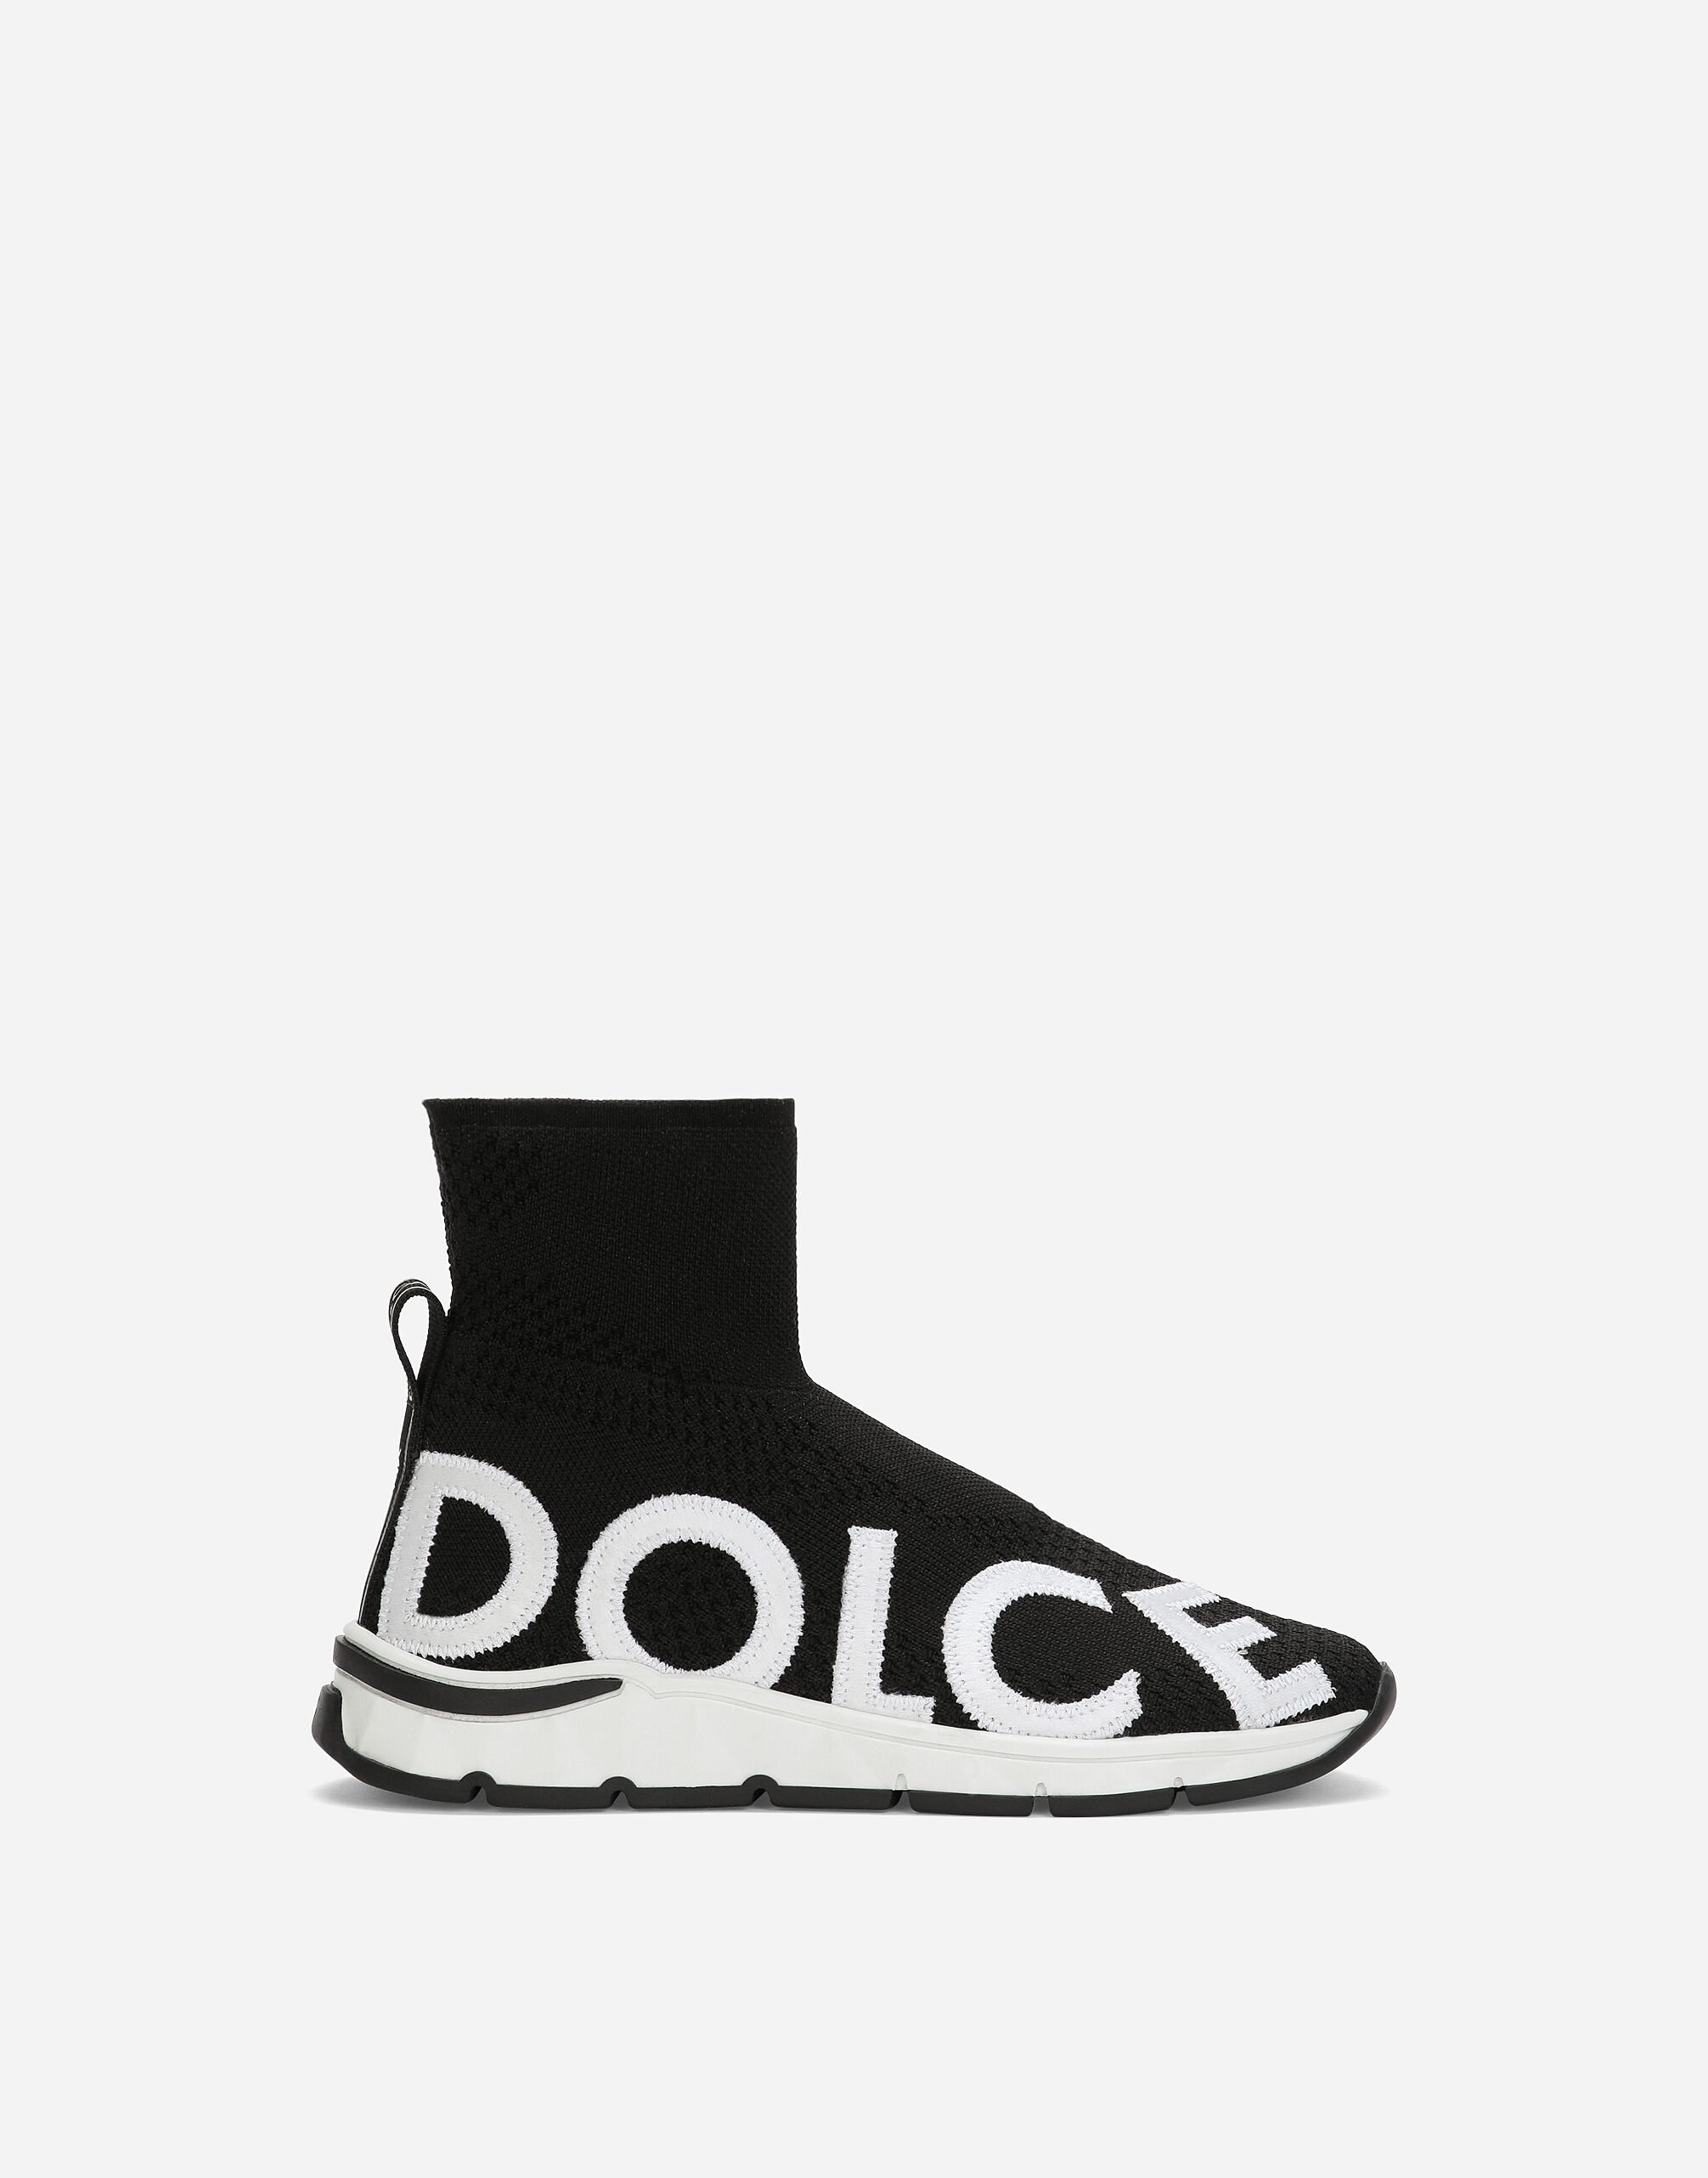 Dolce&Gabbana Sorrento 2.0 stretch mesh high-top sneakers Black DA5173A1671